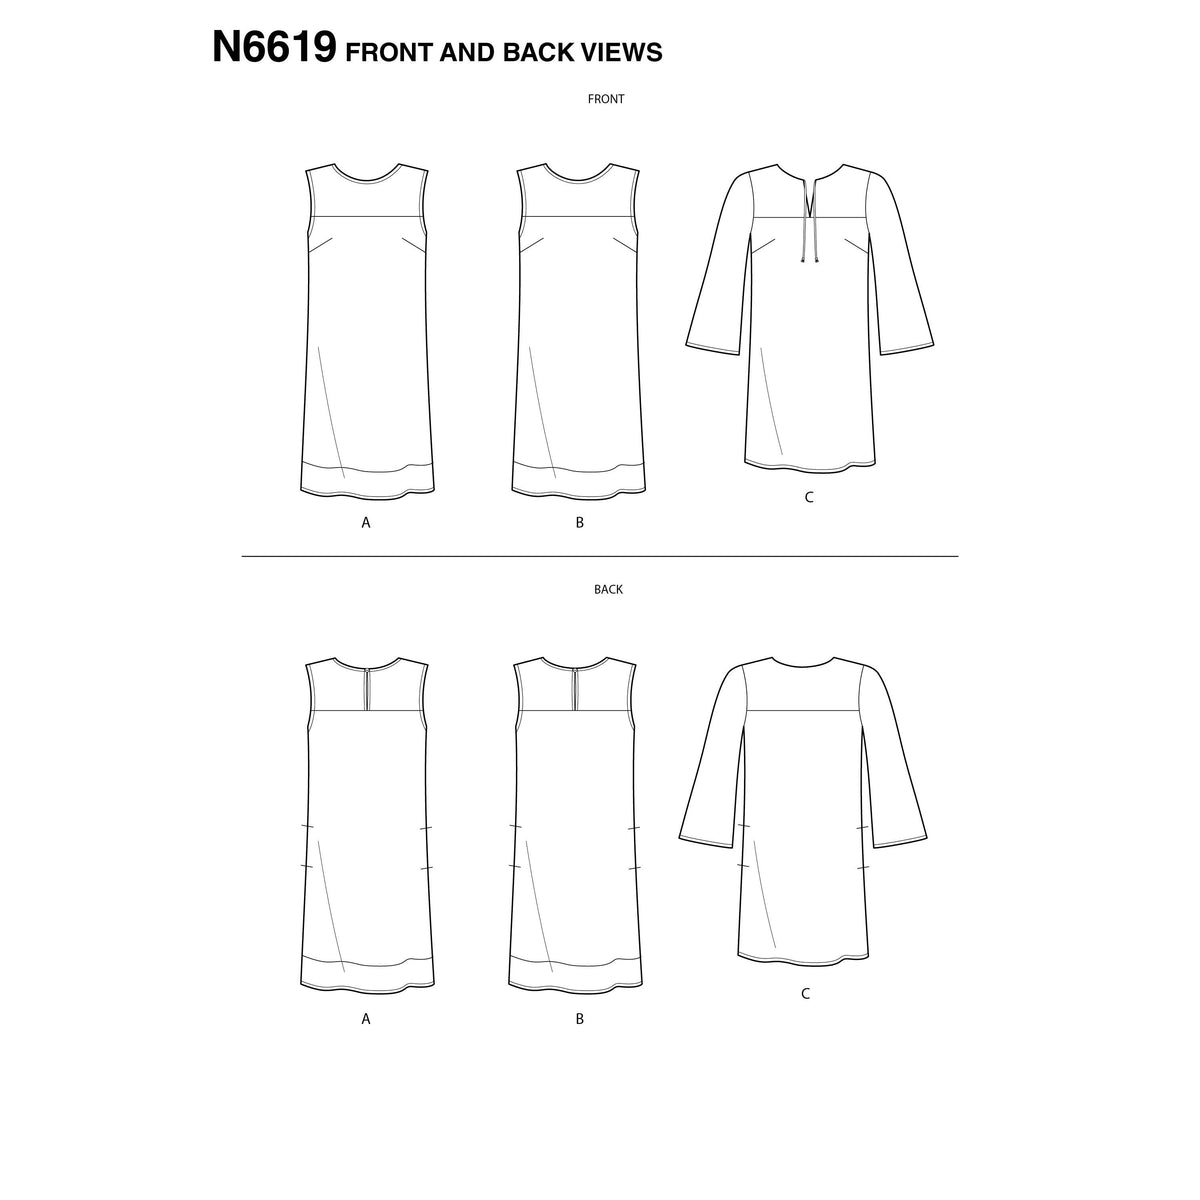 6619 New Look Sewing Pattern N6619 Misses' Dresses